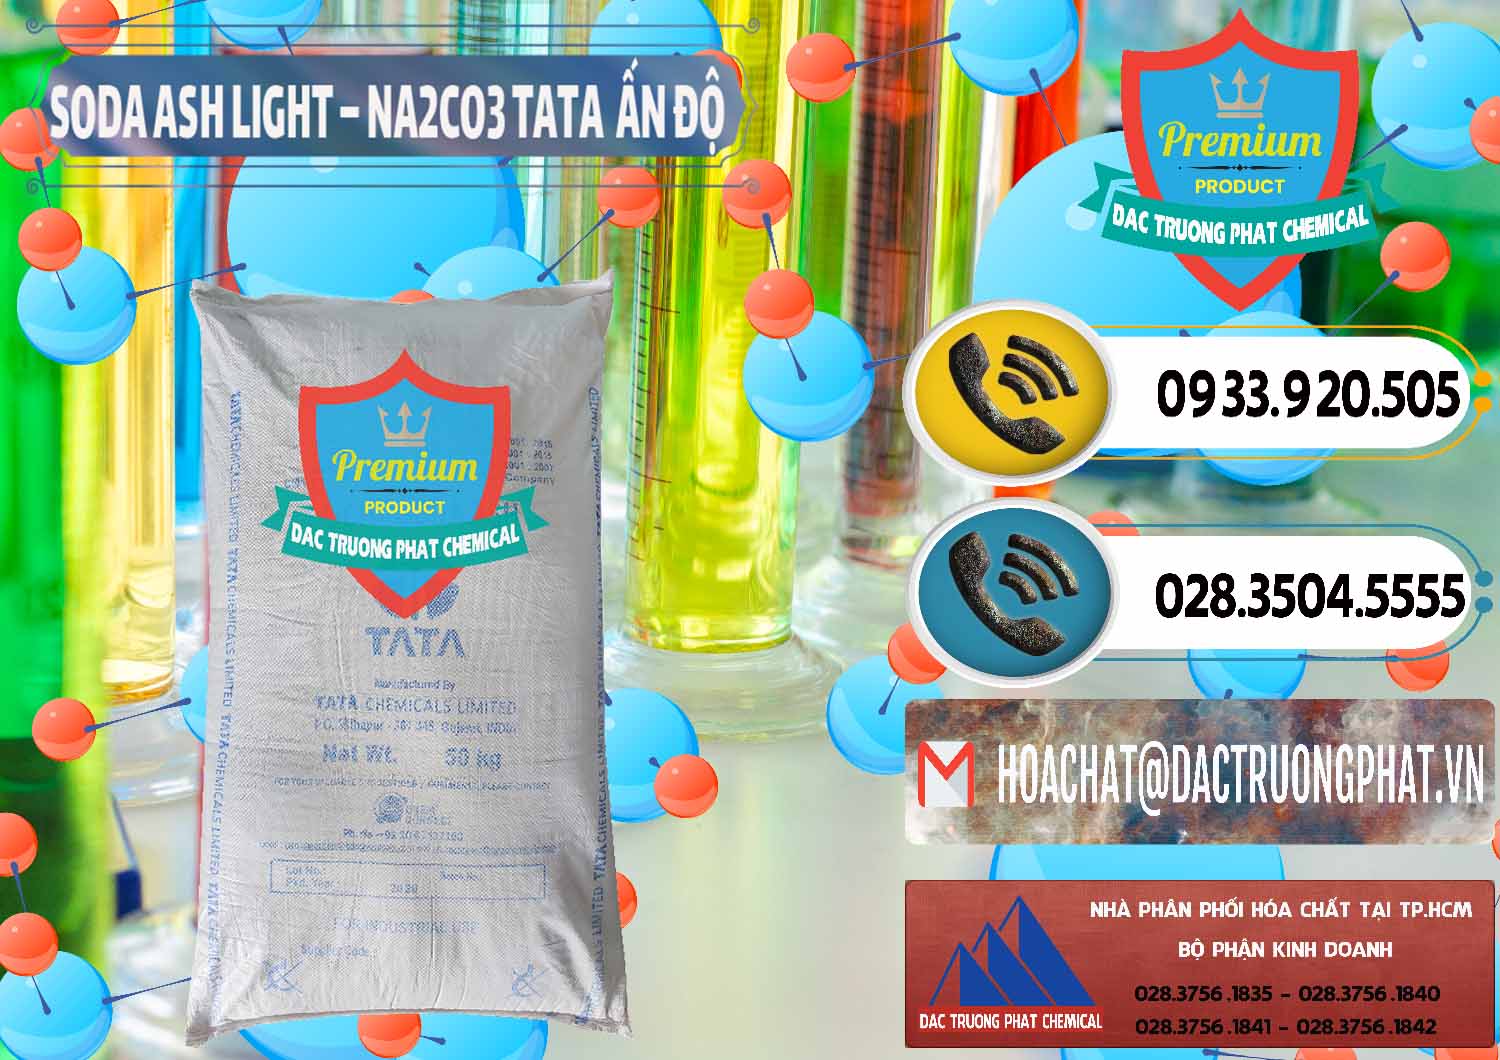 Cty chuyên bán và phân phối Soda Ash Light - NA2CO3 TATA Ấn Độ India - 0132 - Nơi cung cấp - kinh doanh hóa chất tại TP.HCM - hoachatdetnhuom.vn